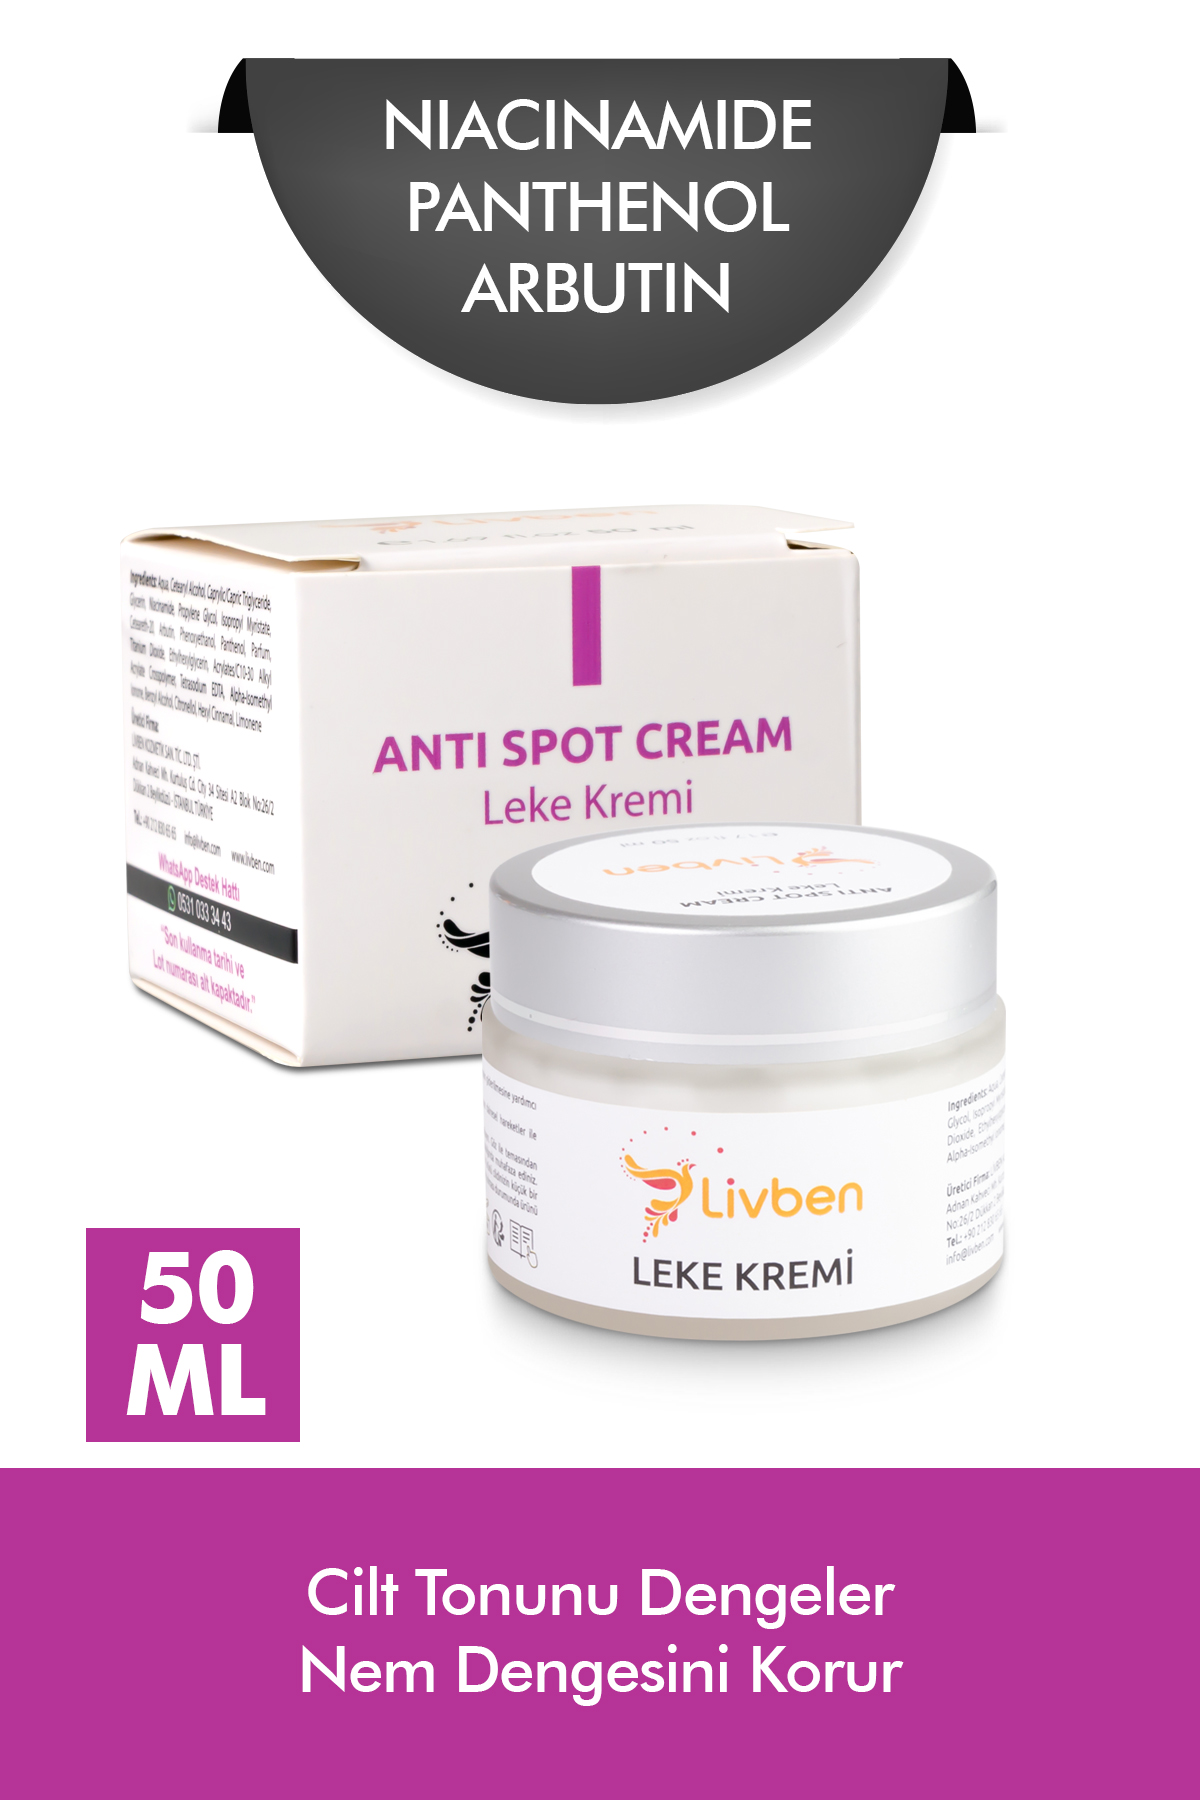 Livben ® Elastikiyet Artırıcı Cilt Yenileyici Krem 100 ml ve Leke Kremi 50 Ml